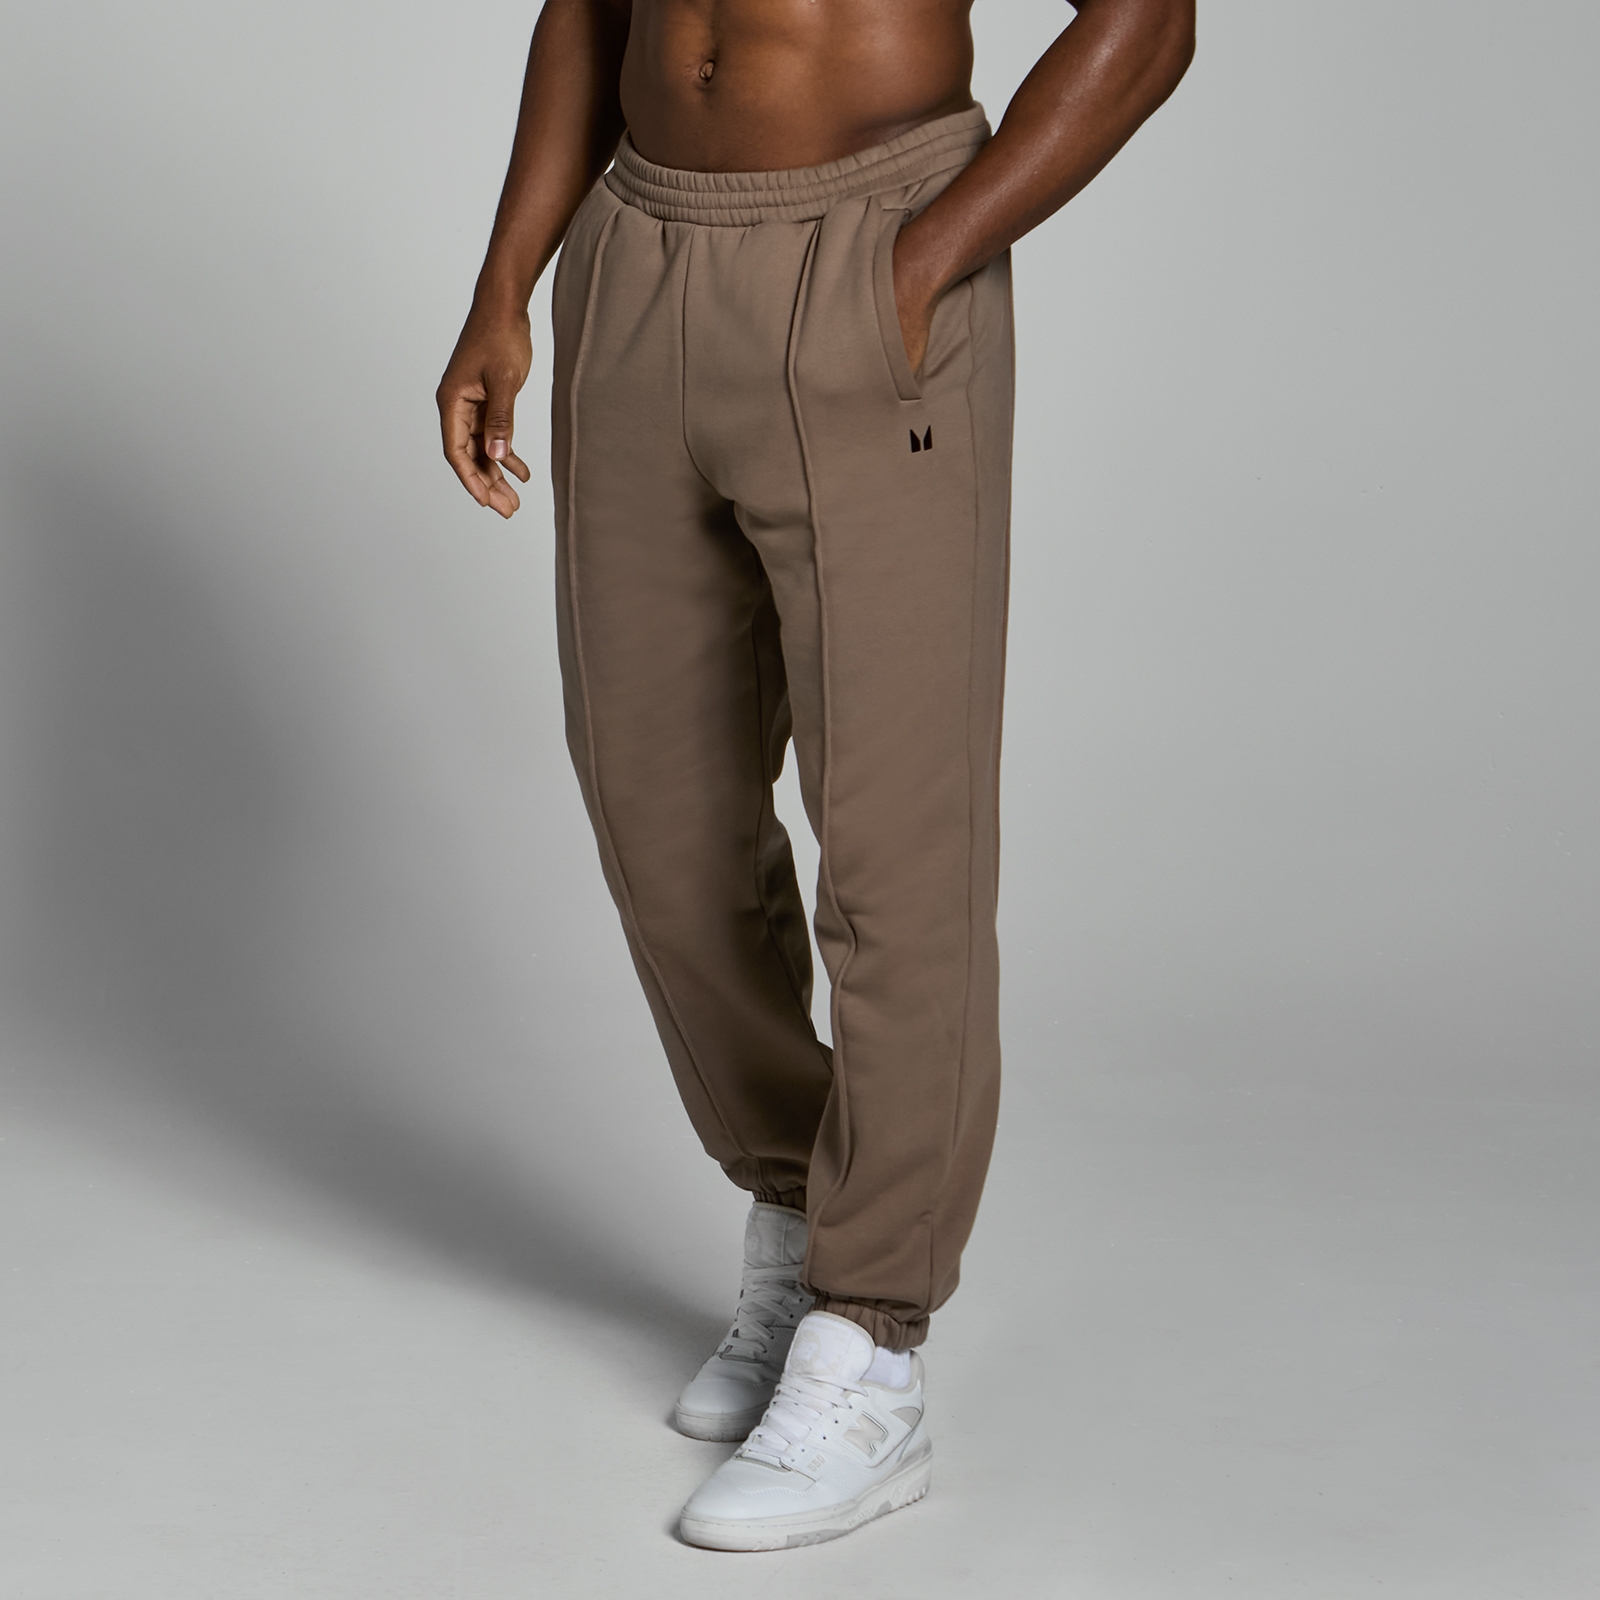 MP muške predimenzionirane sportske hlače za teške uvjete rada Lifestyle - Soft Brown - XS